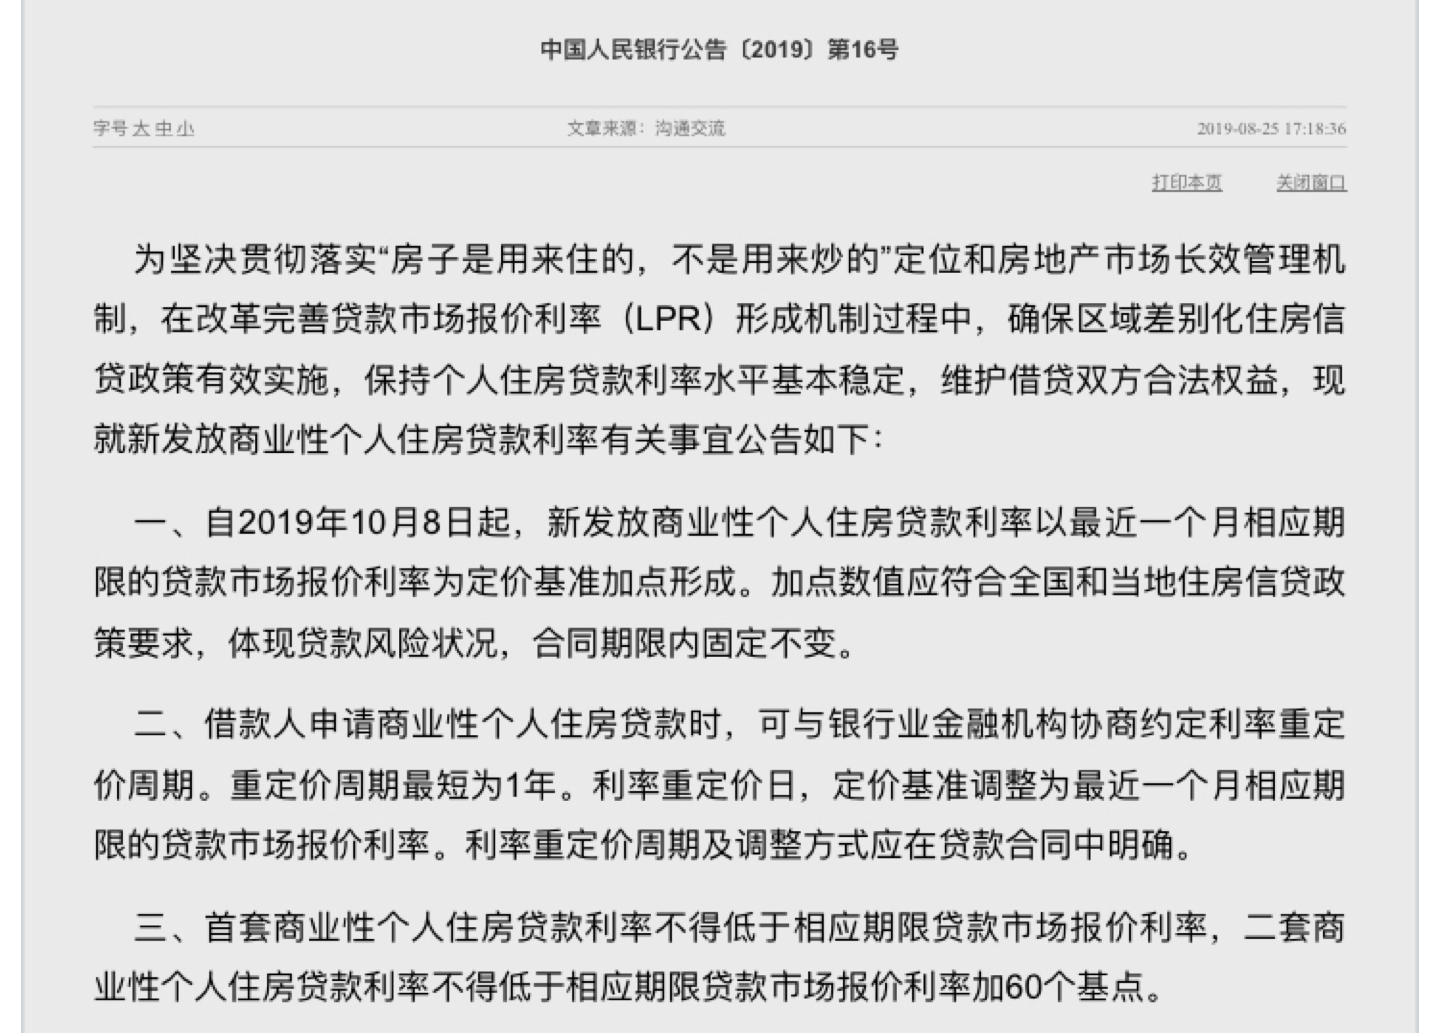 个人房贷利率新政来了 对上海购房者影响不大